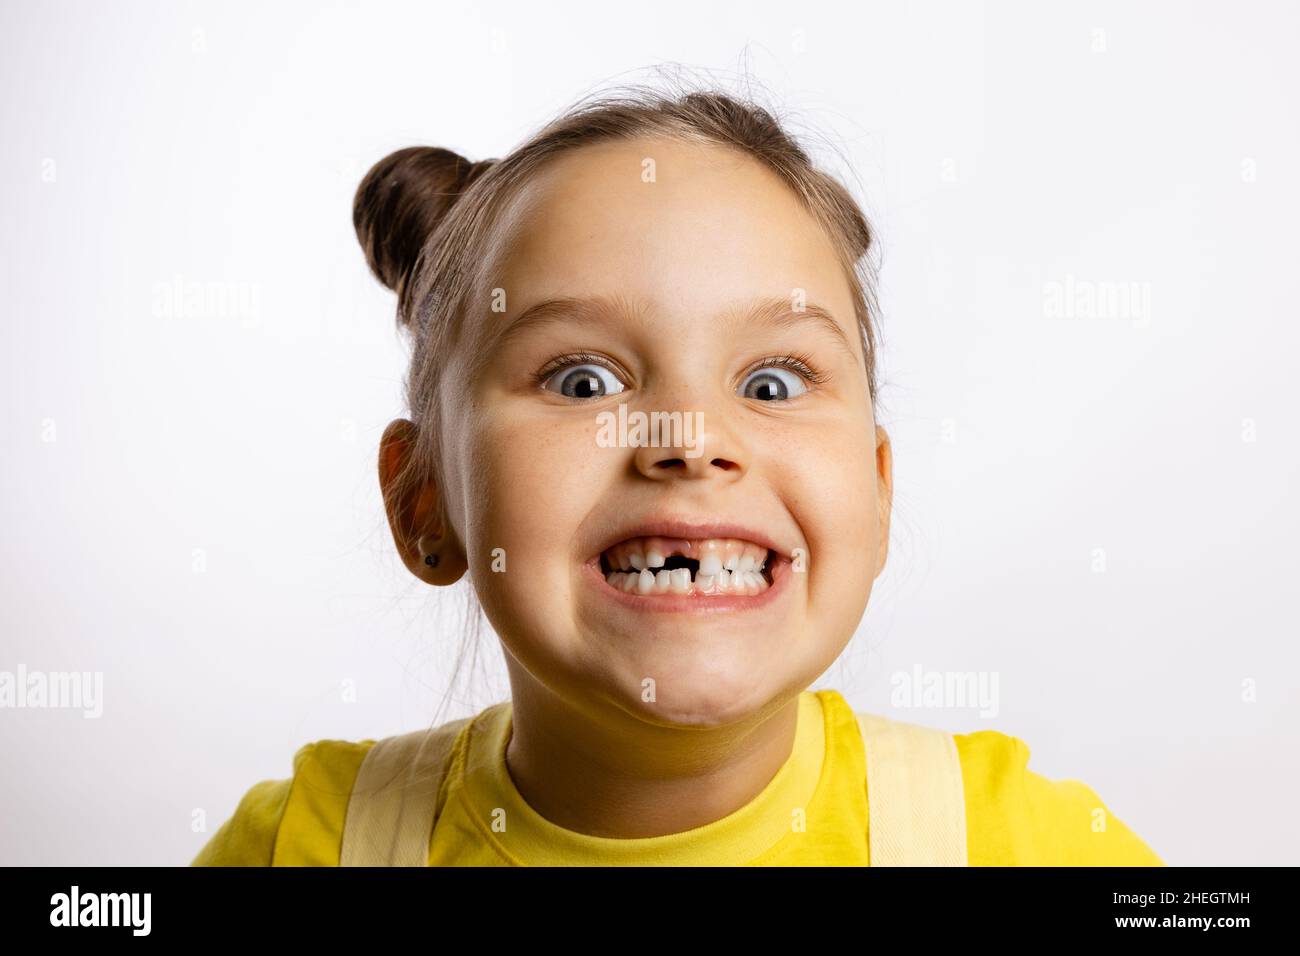 Porträt eines kleinen Mädchens mit fehlenden Babyzahn vorne und einem verrückten Lächeln mit prall gefüllten Augen in gelbem T-Shirt auf weißem Hintergrund. Erste Zähne Stockfoto